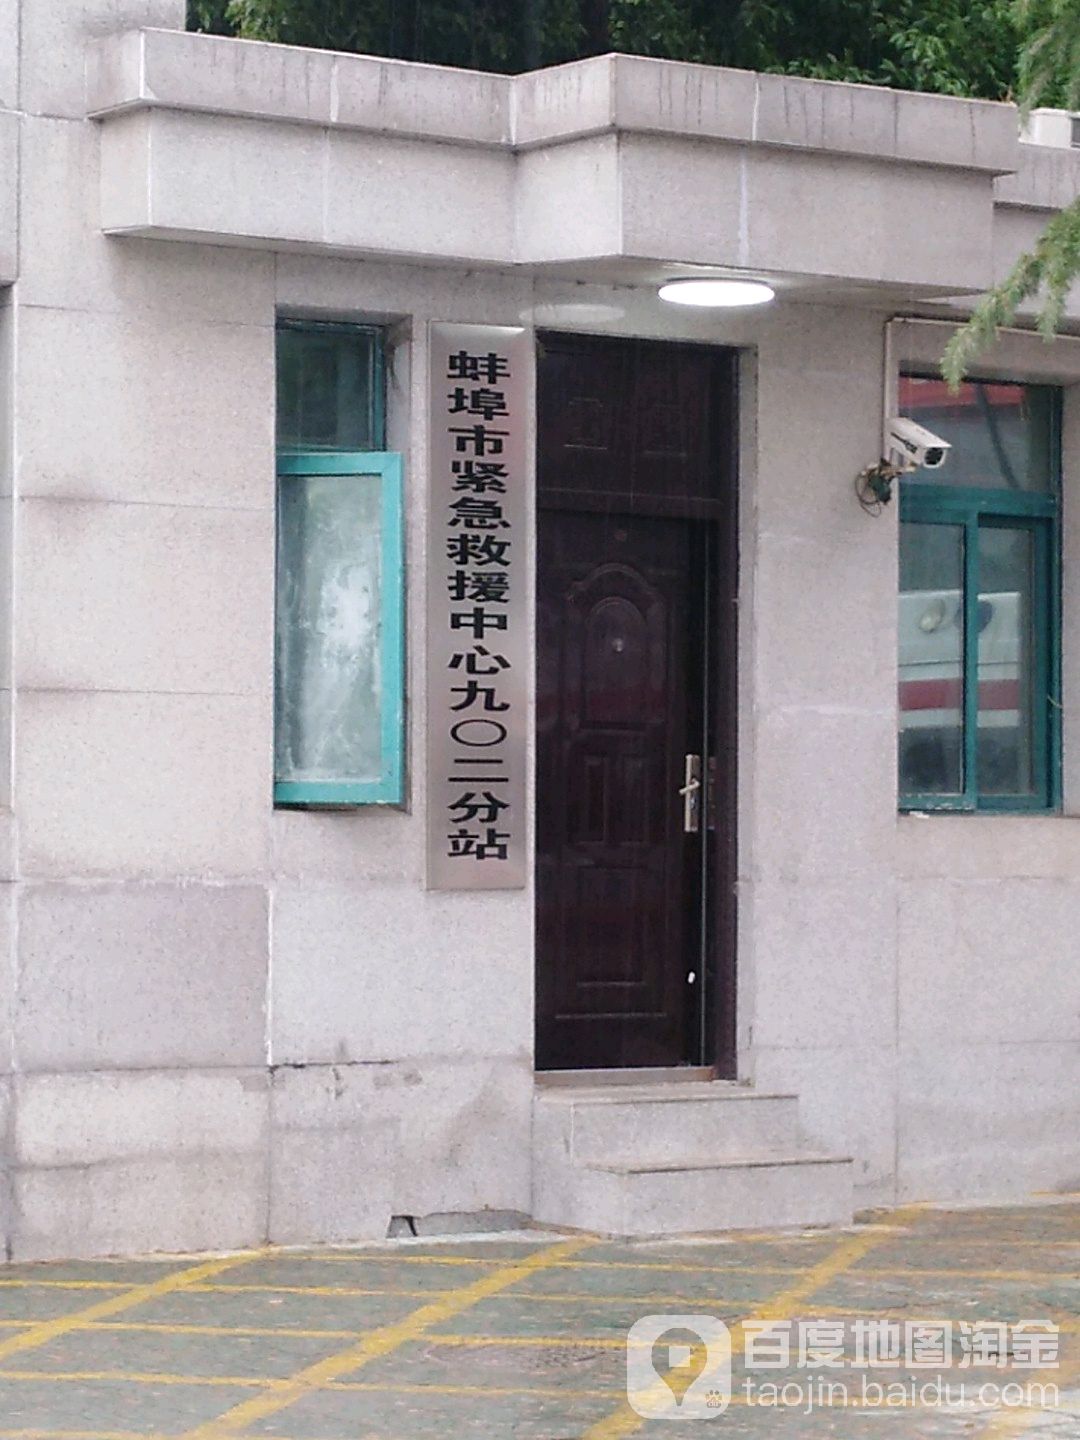 蚌埠市紧急救援中心九0二分站